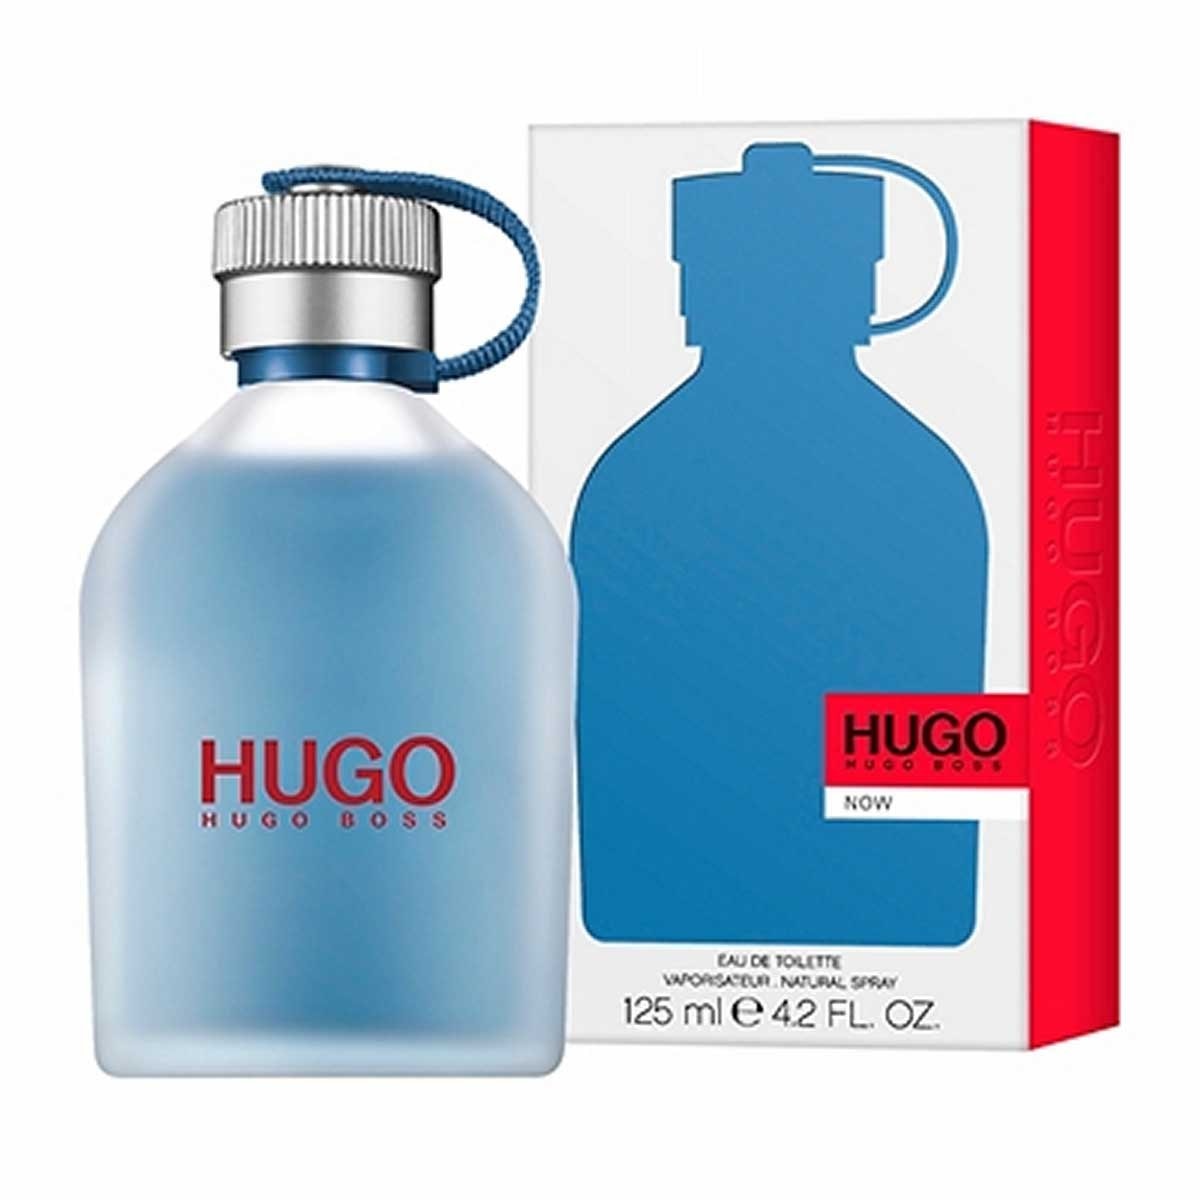 hugo boss man 125 ml precio